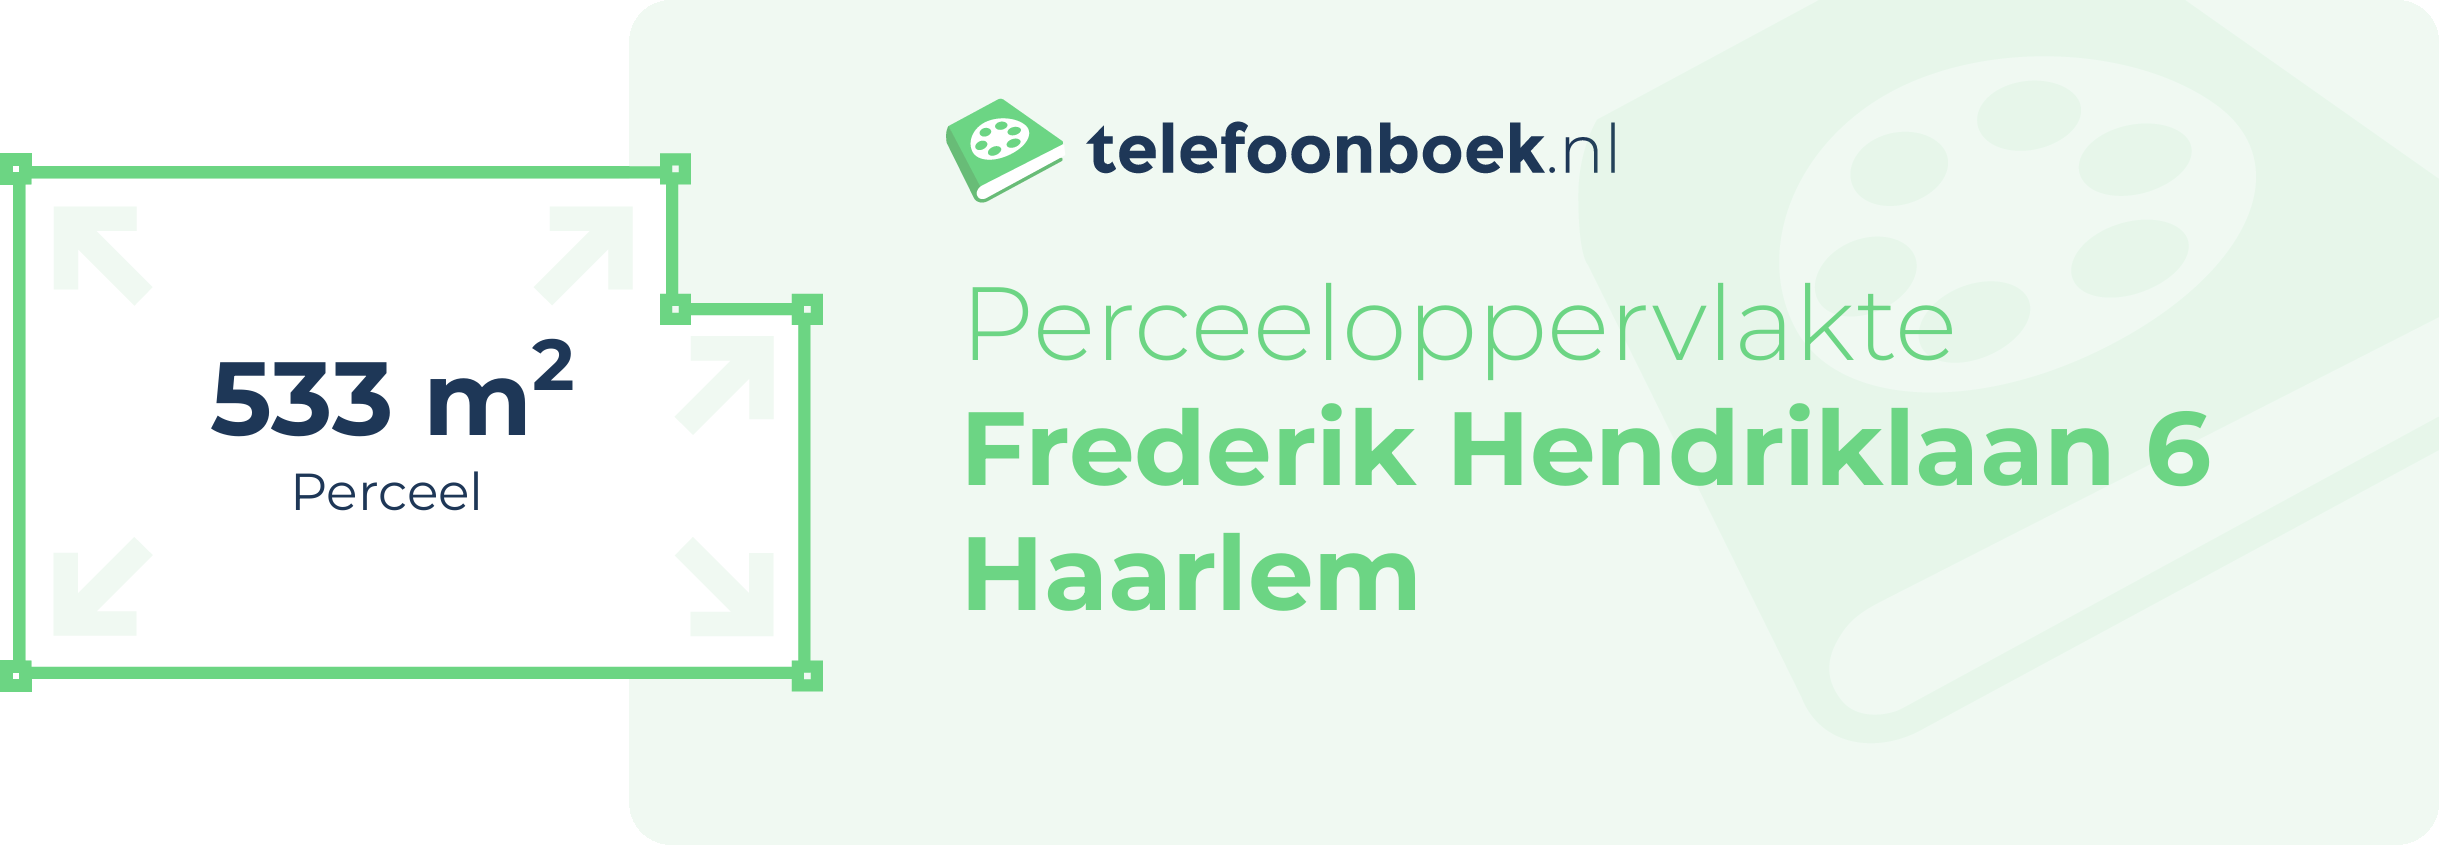 Perceeloppervlakte Frederik Hendriklaan 6 Haarlem